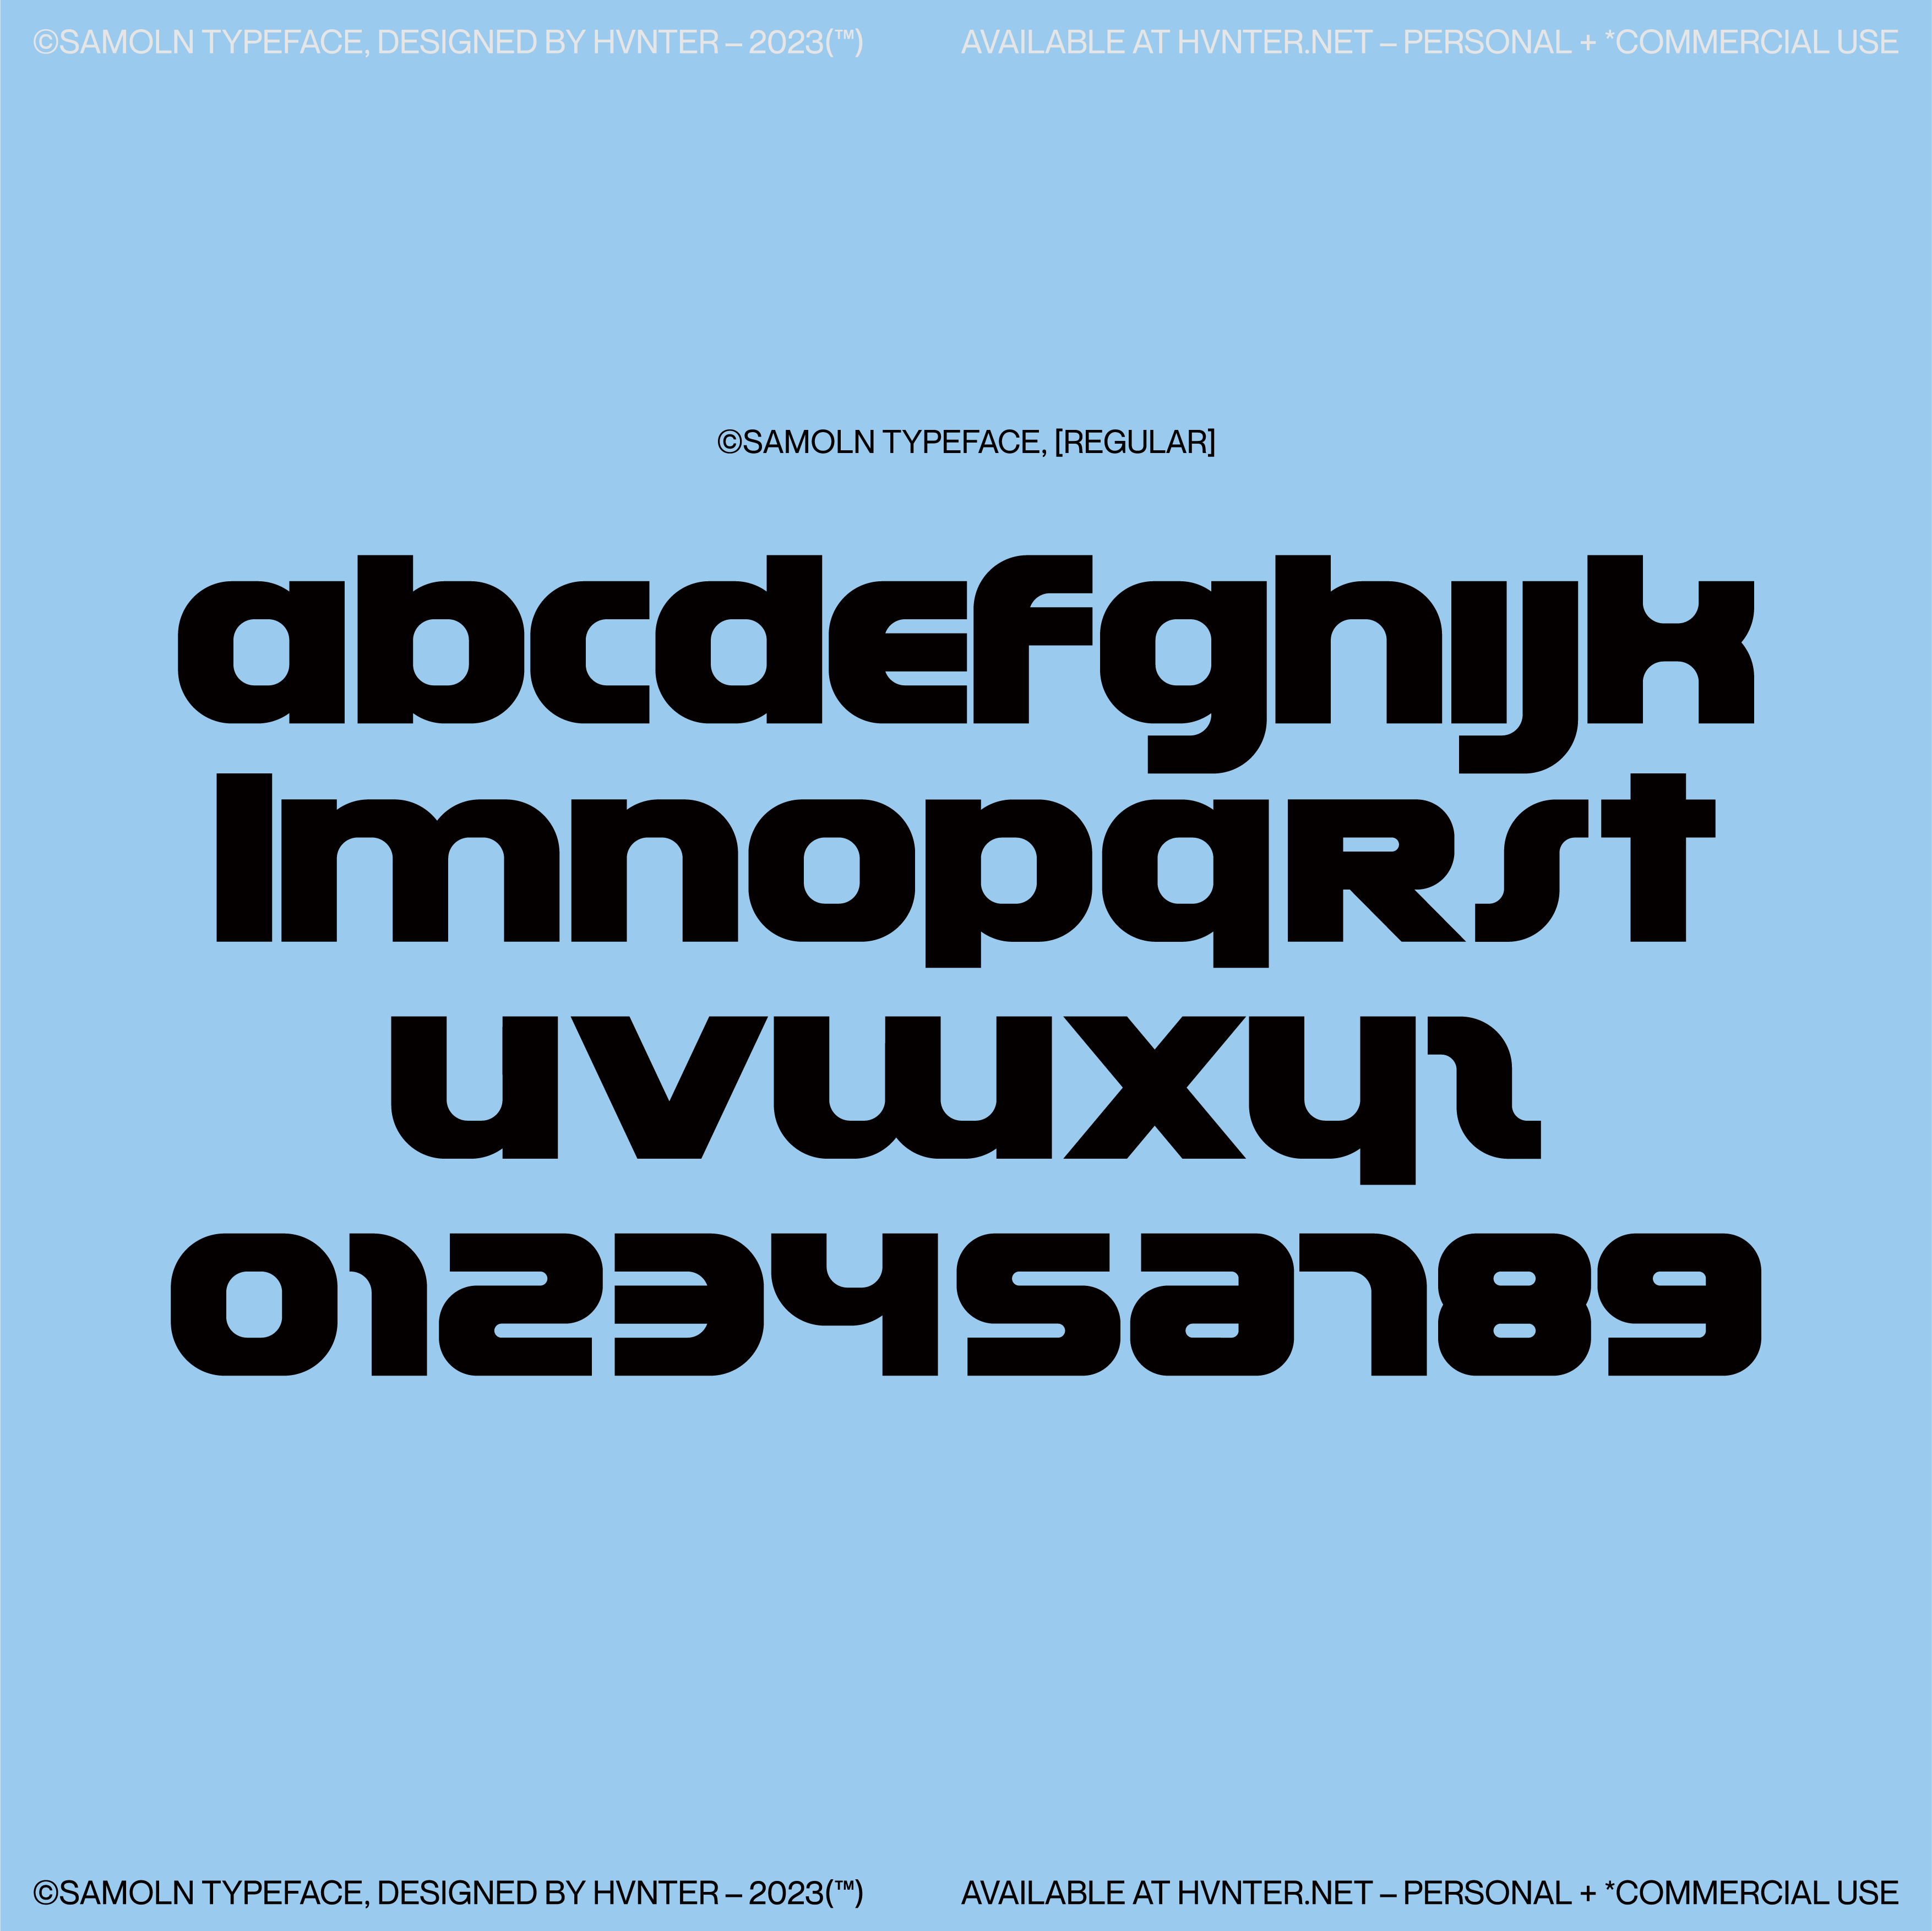 Samoln Typeface